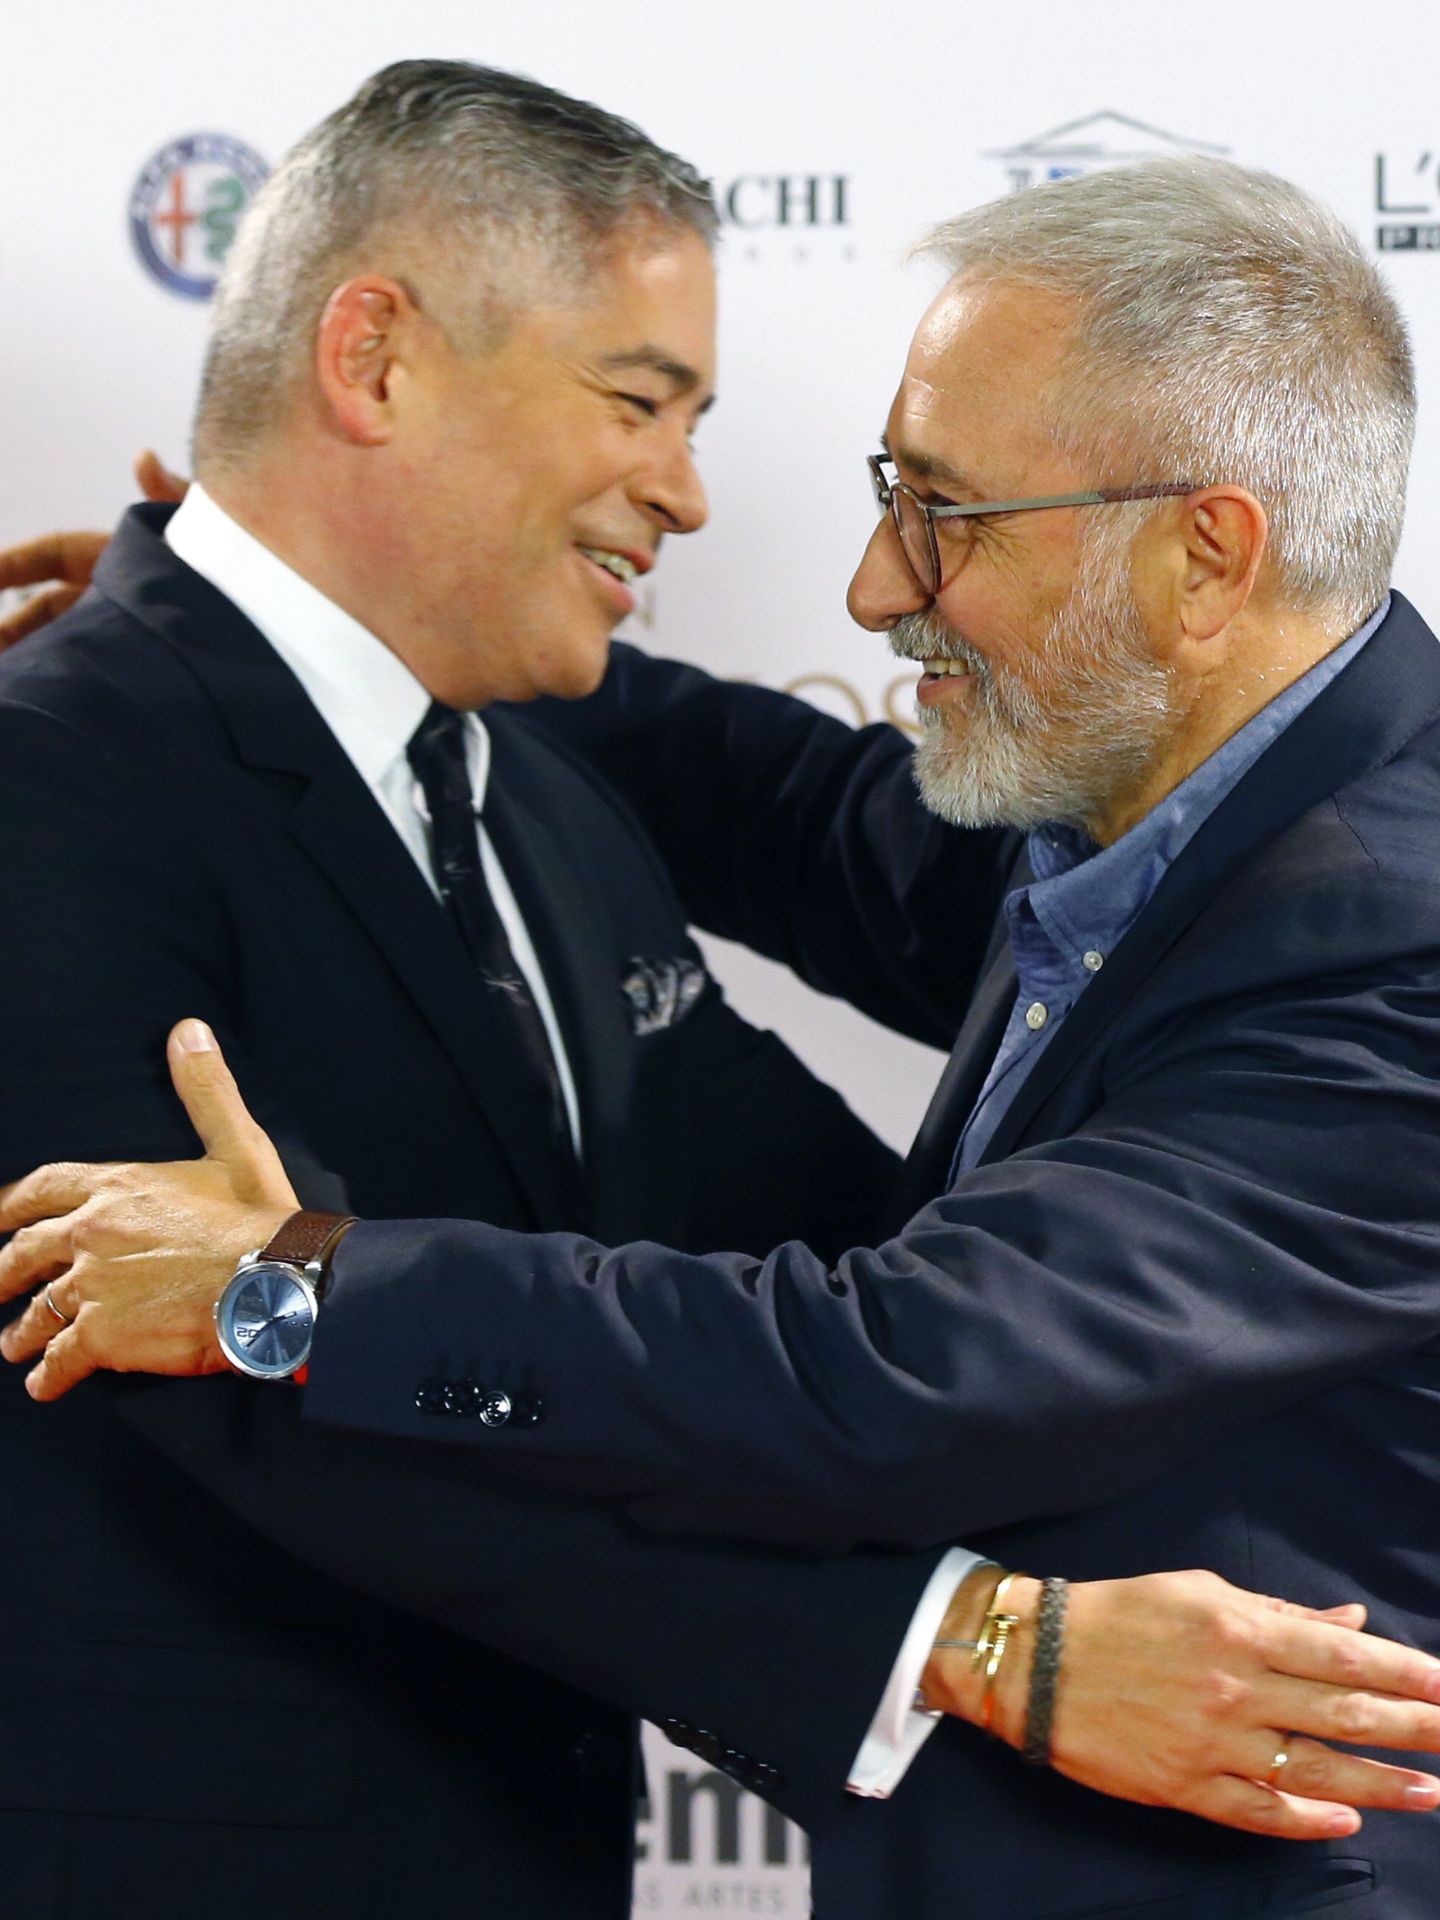 Javier Sardá saluda a Boris Izaguirre a su llegada a la ceremonia de entrega de los XIX Premios Iris de la Academia de Televisión. (EFE)